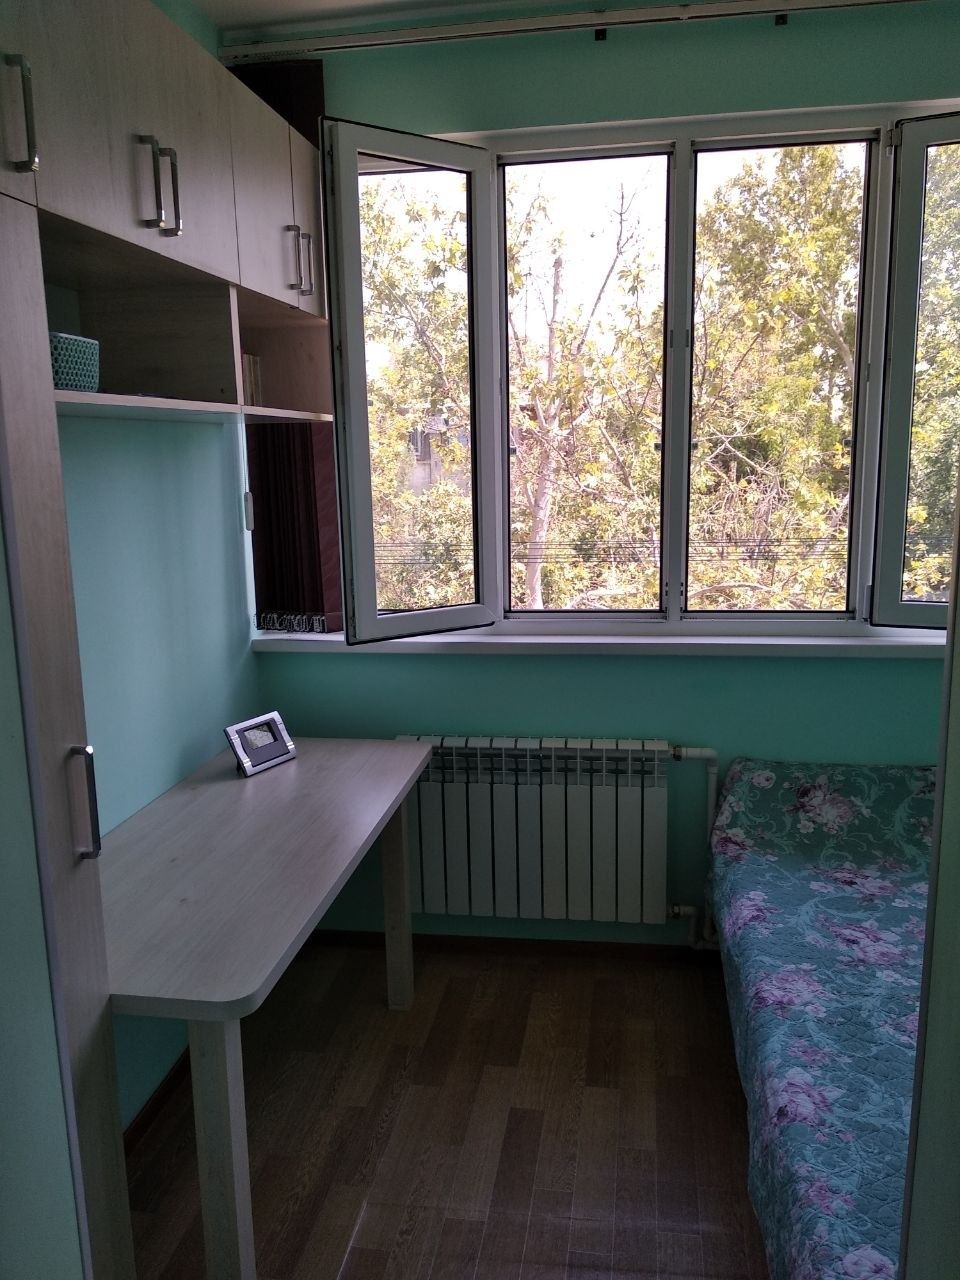 Продается 1 комнатная квартира мирзо-улугбекский район,чистая